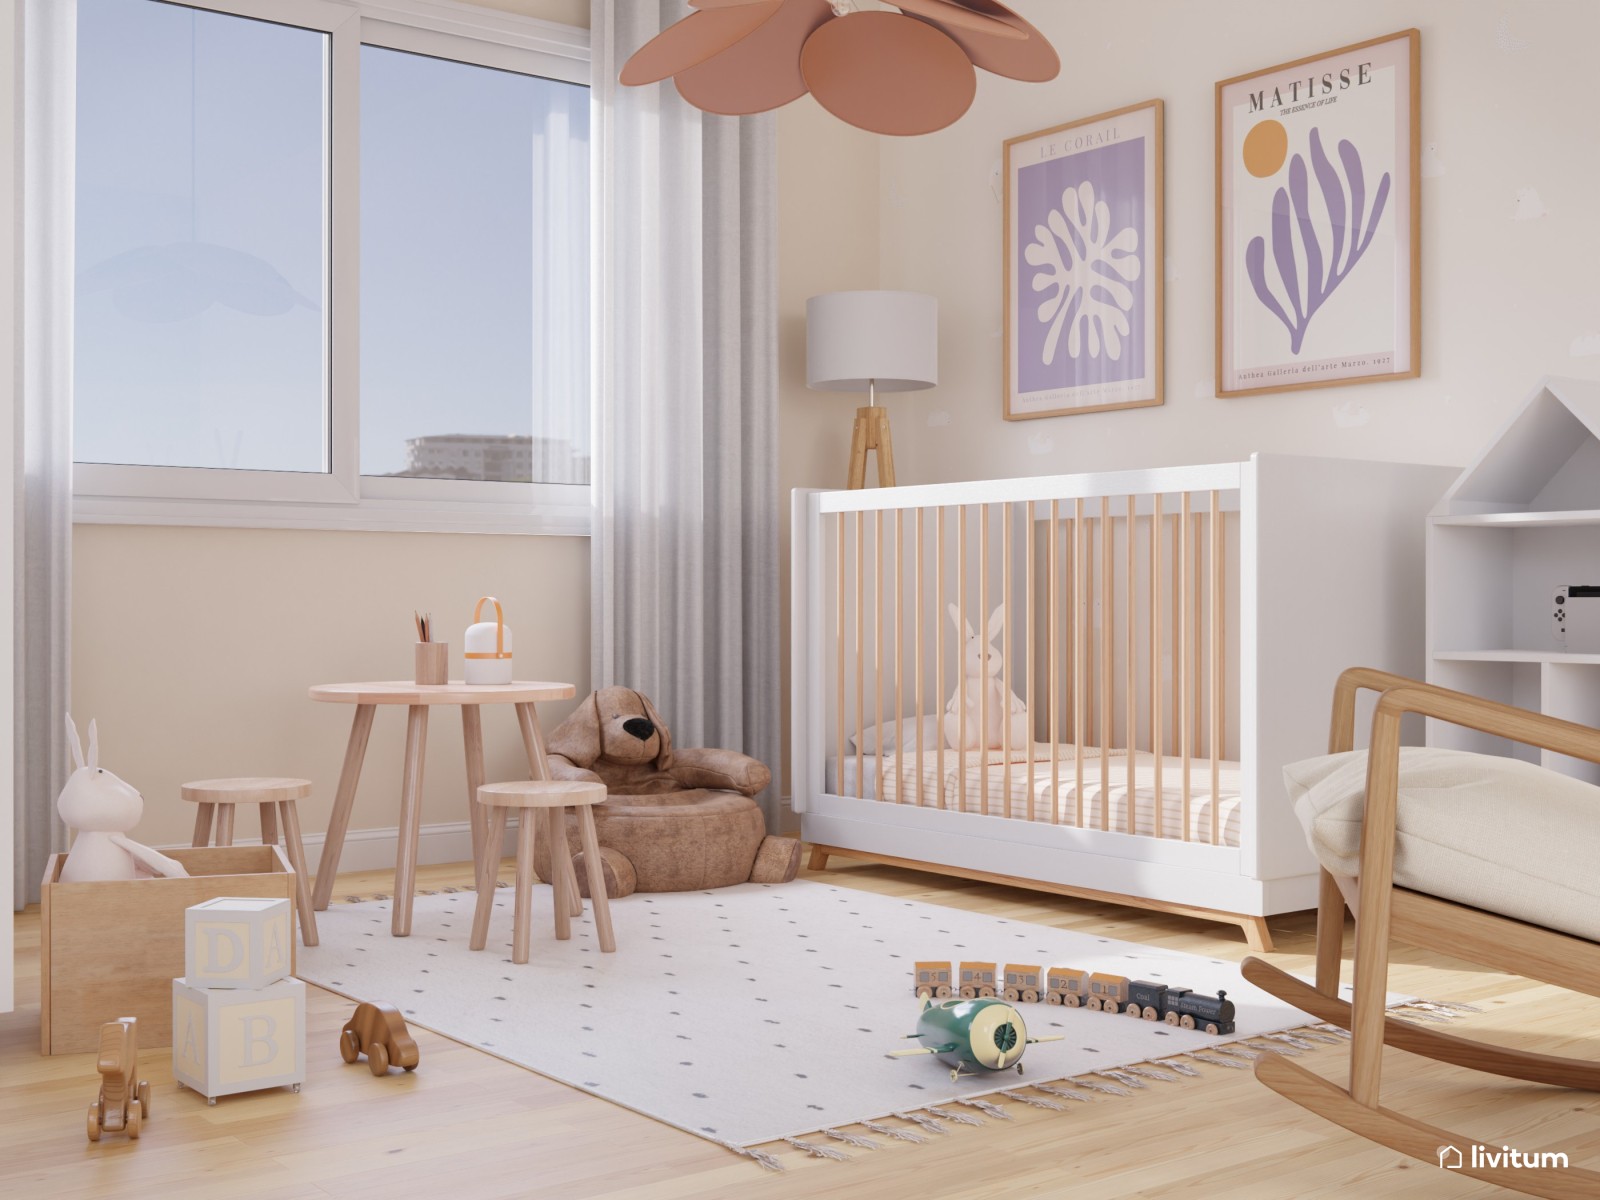 Cunas de estilo y diseño nórdico para bebé